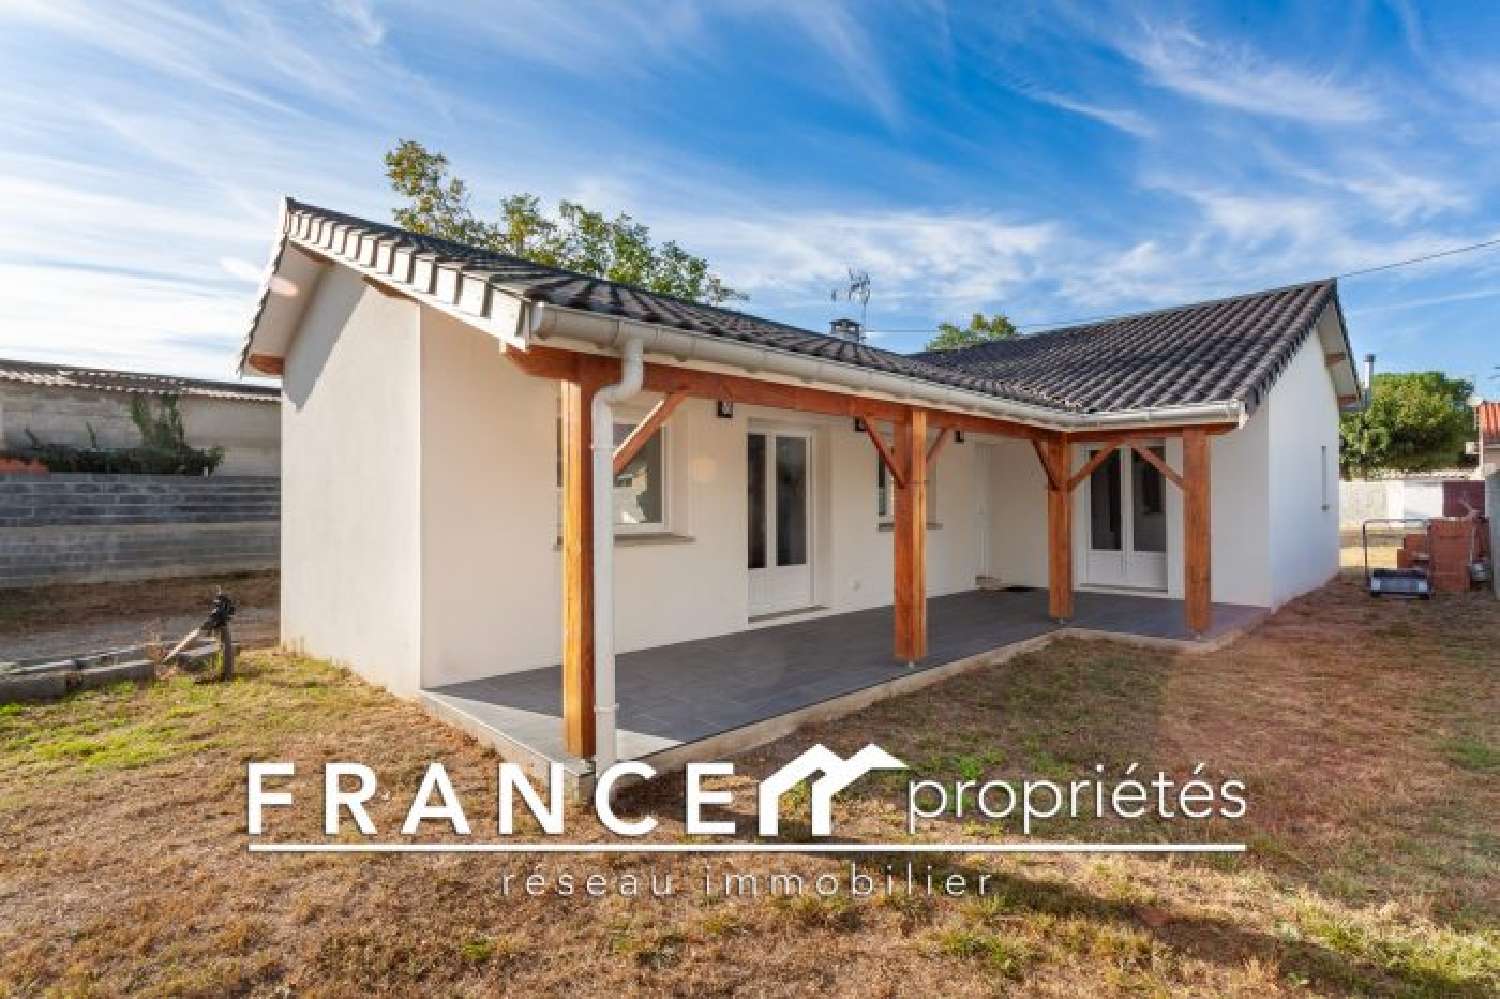  à vendre maison Carbonne Haute-Garonne 2